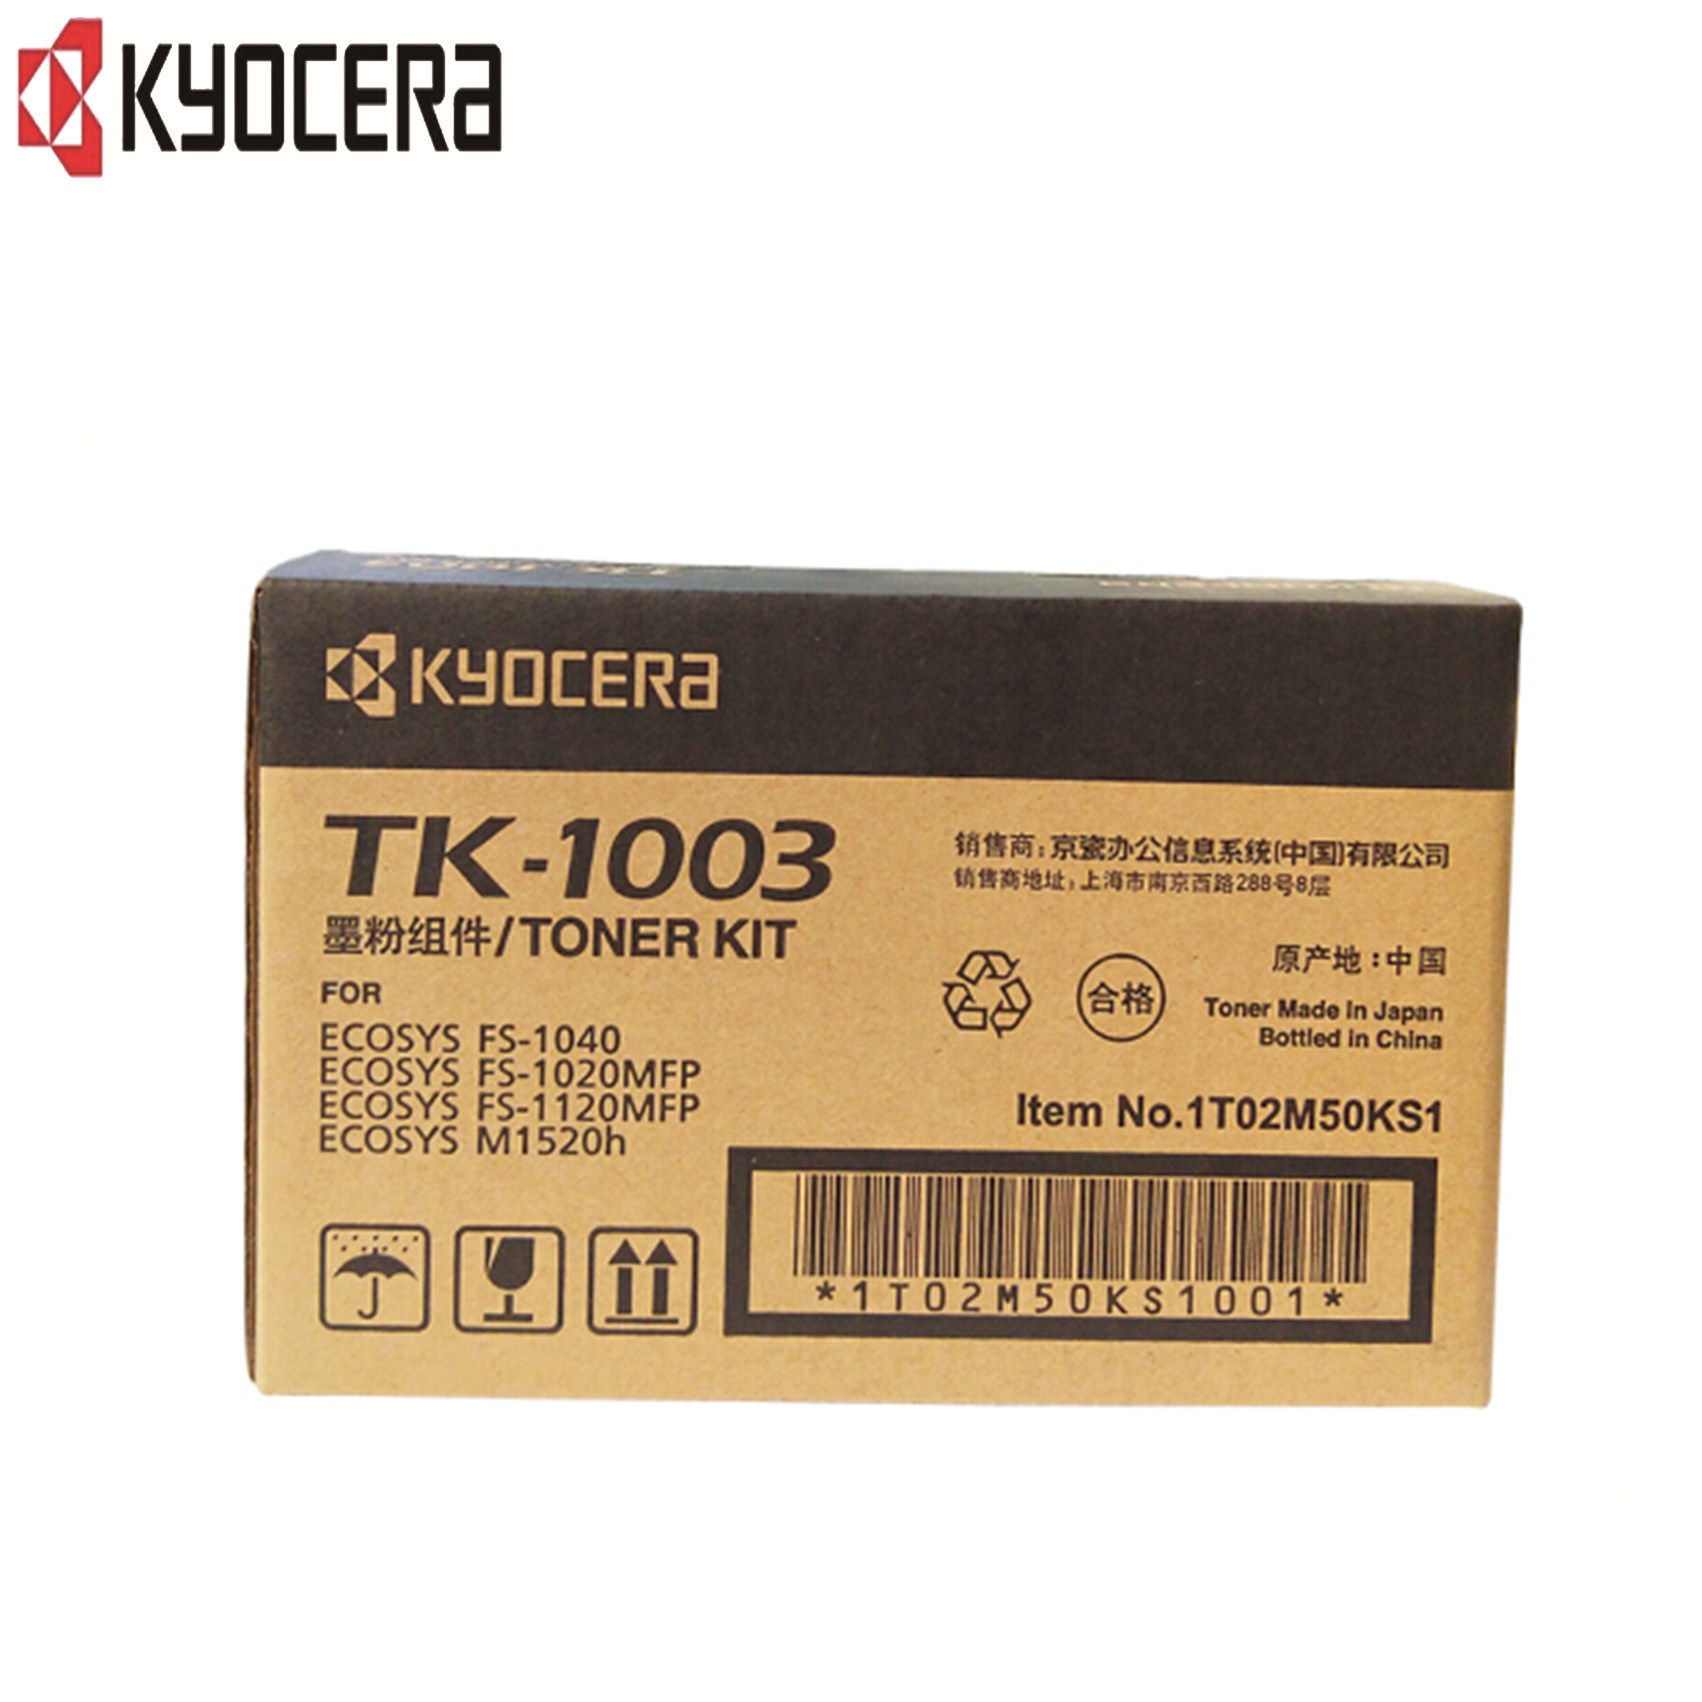 京瓷(KYOCERA)TK-1003粉盒 (FS-1020MFP/1120MFP/1040/M1520h) hs